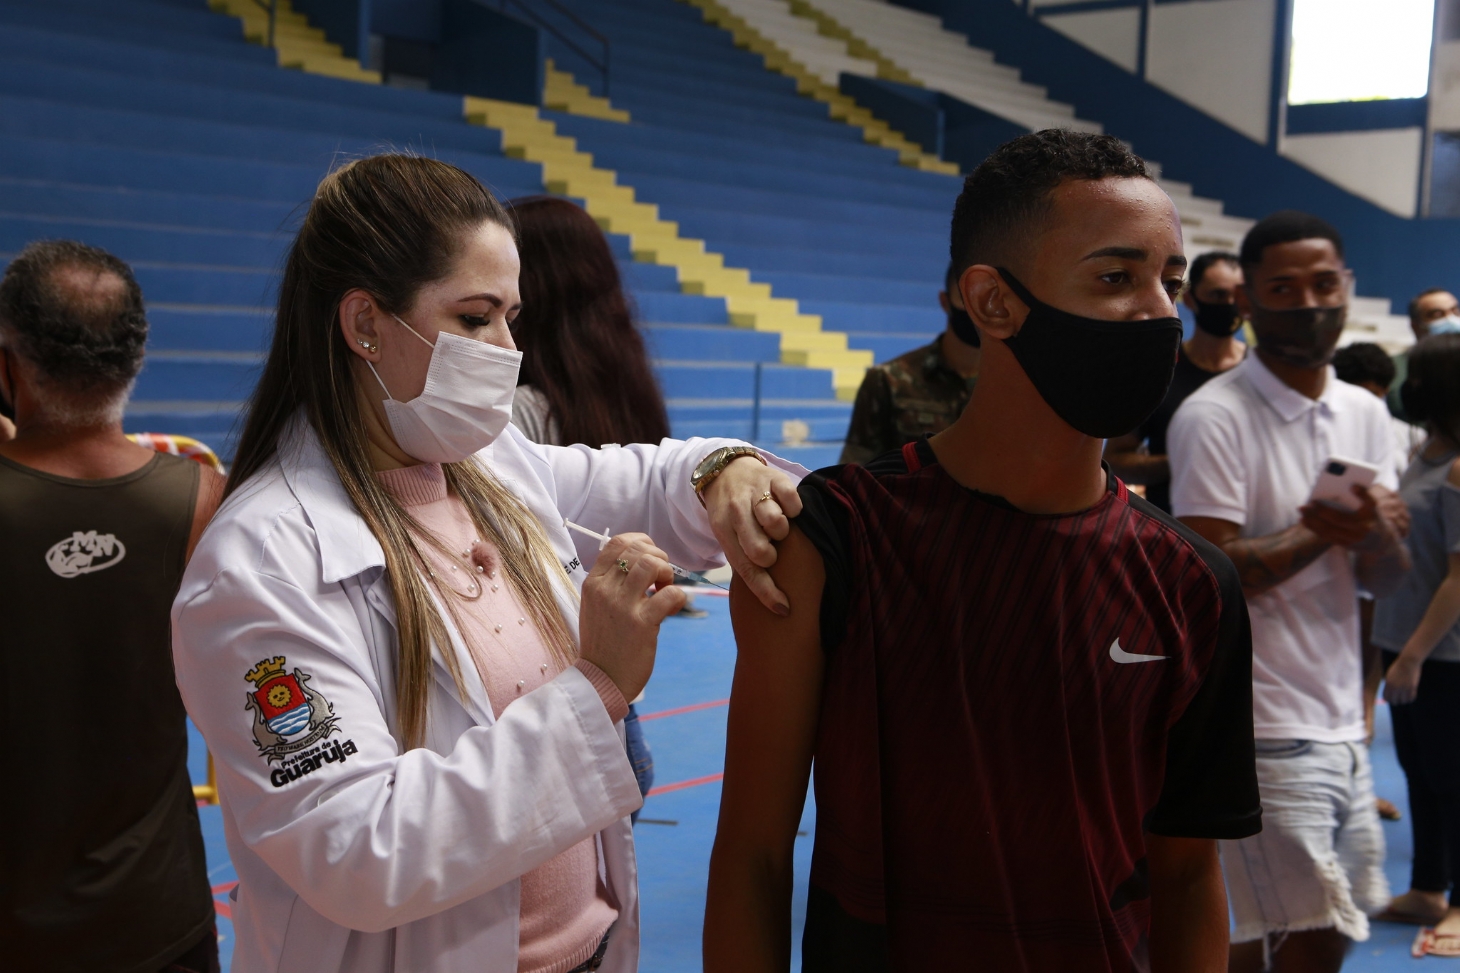 Guarujá vacina 90chr37 do público adolescente com a primeira dose | Jornal da Orla